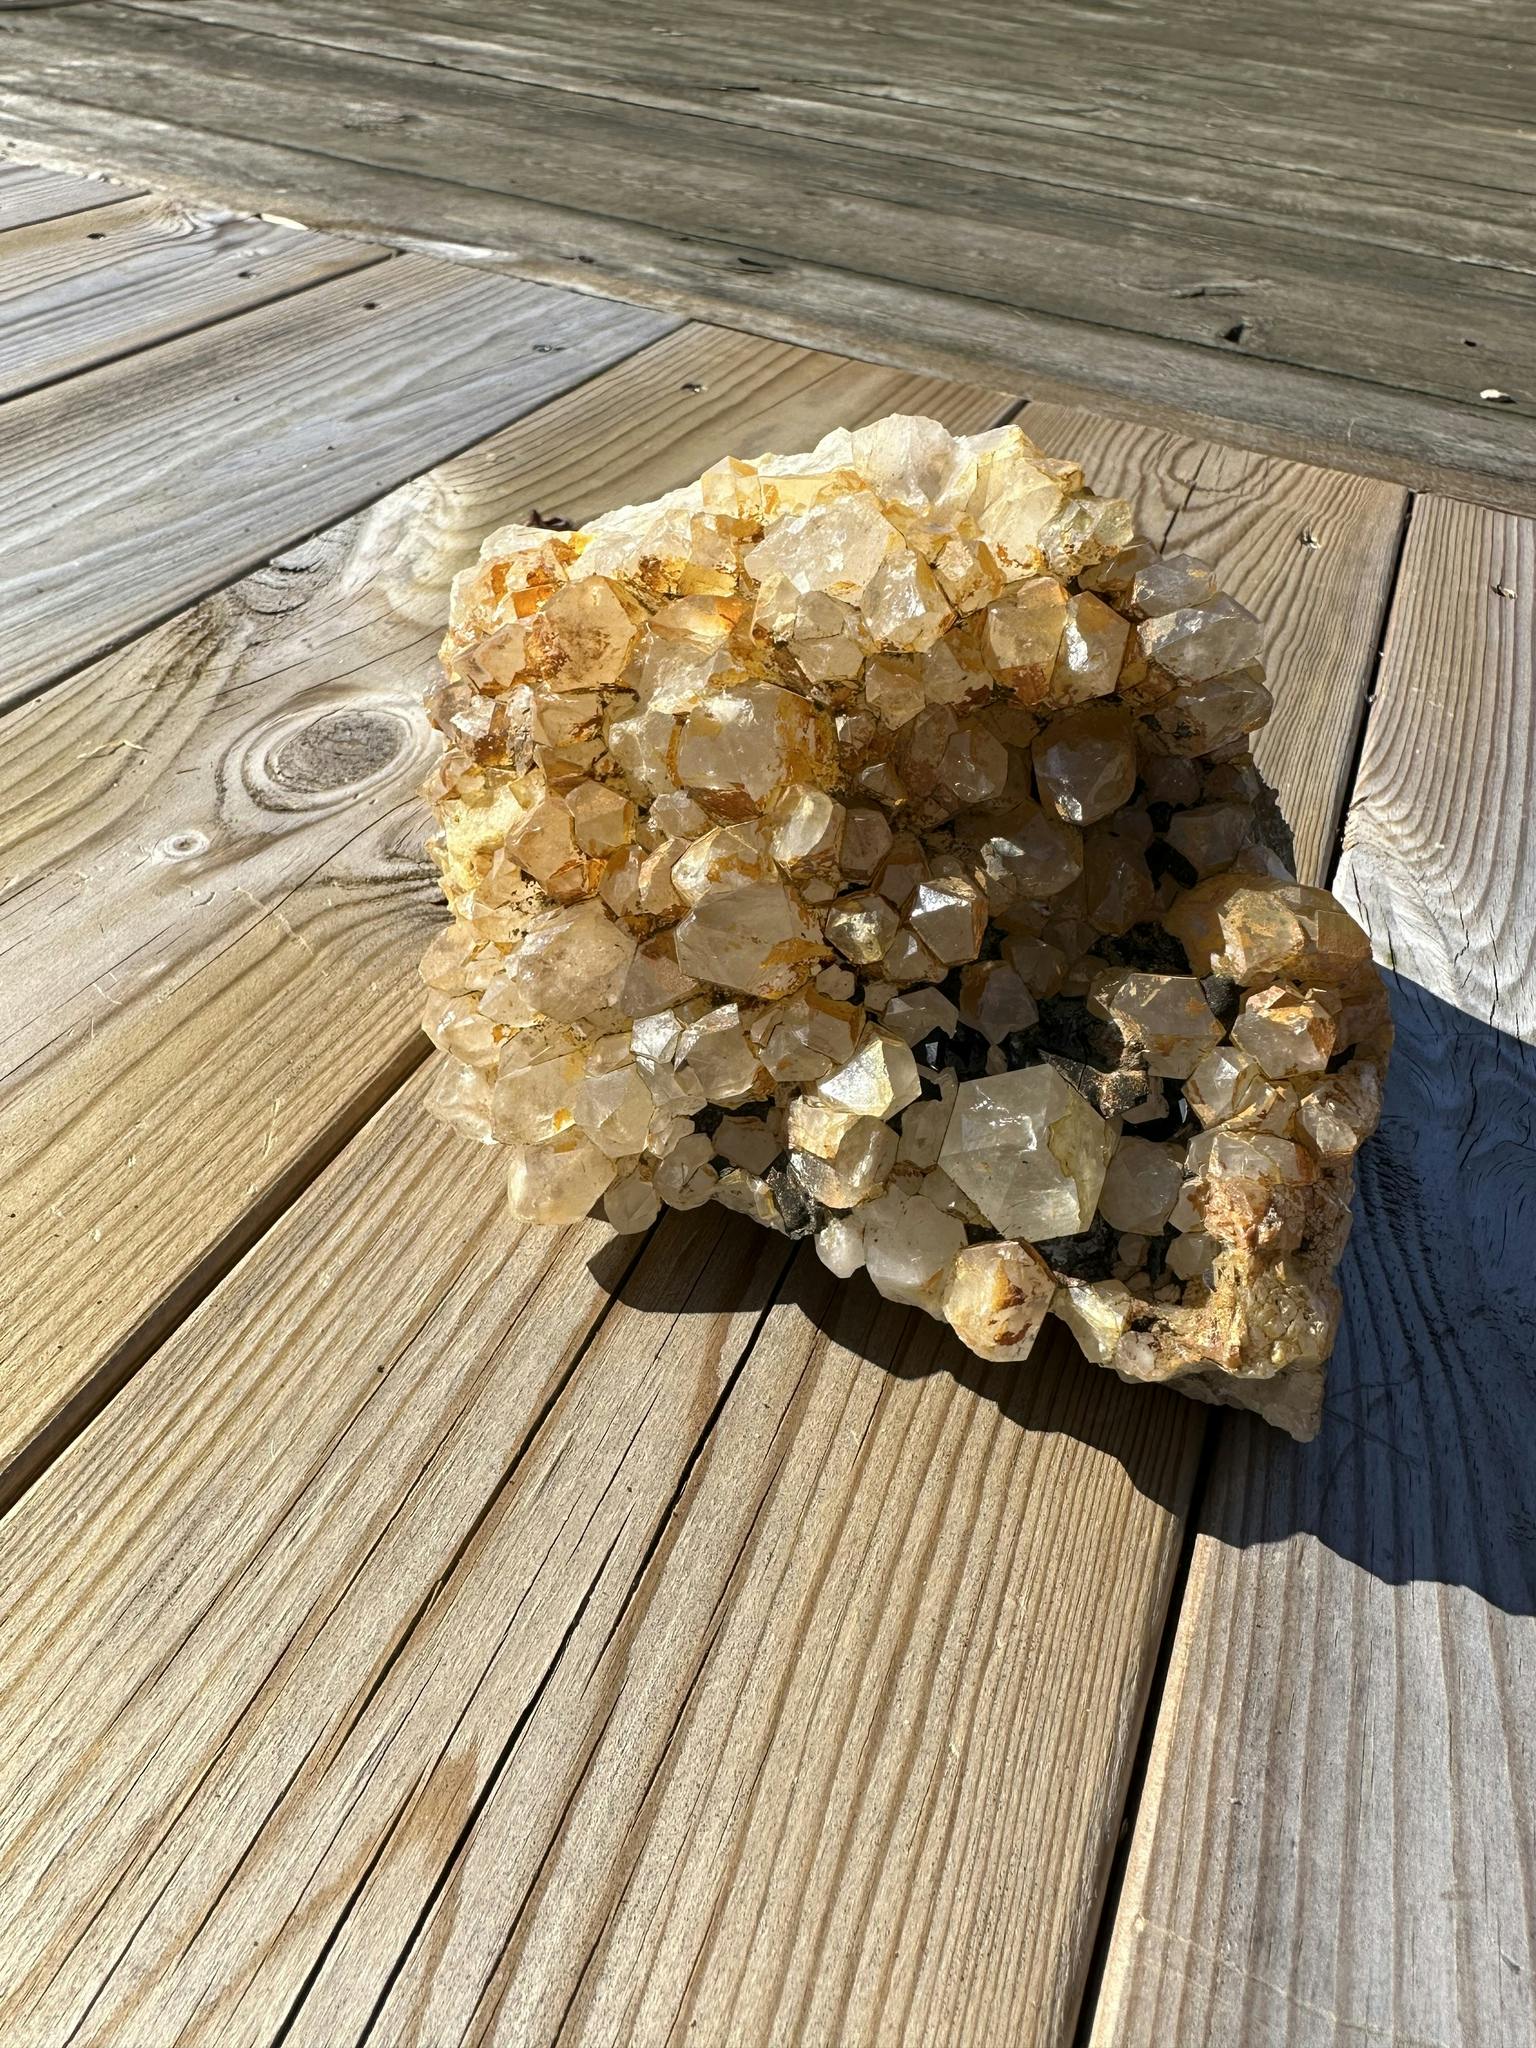 Bergkristall från Sverige, Dalsland